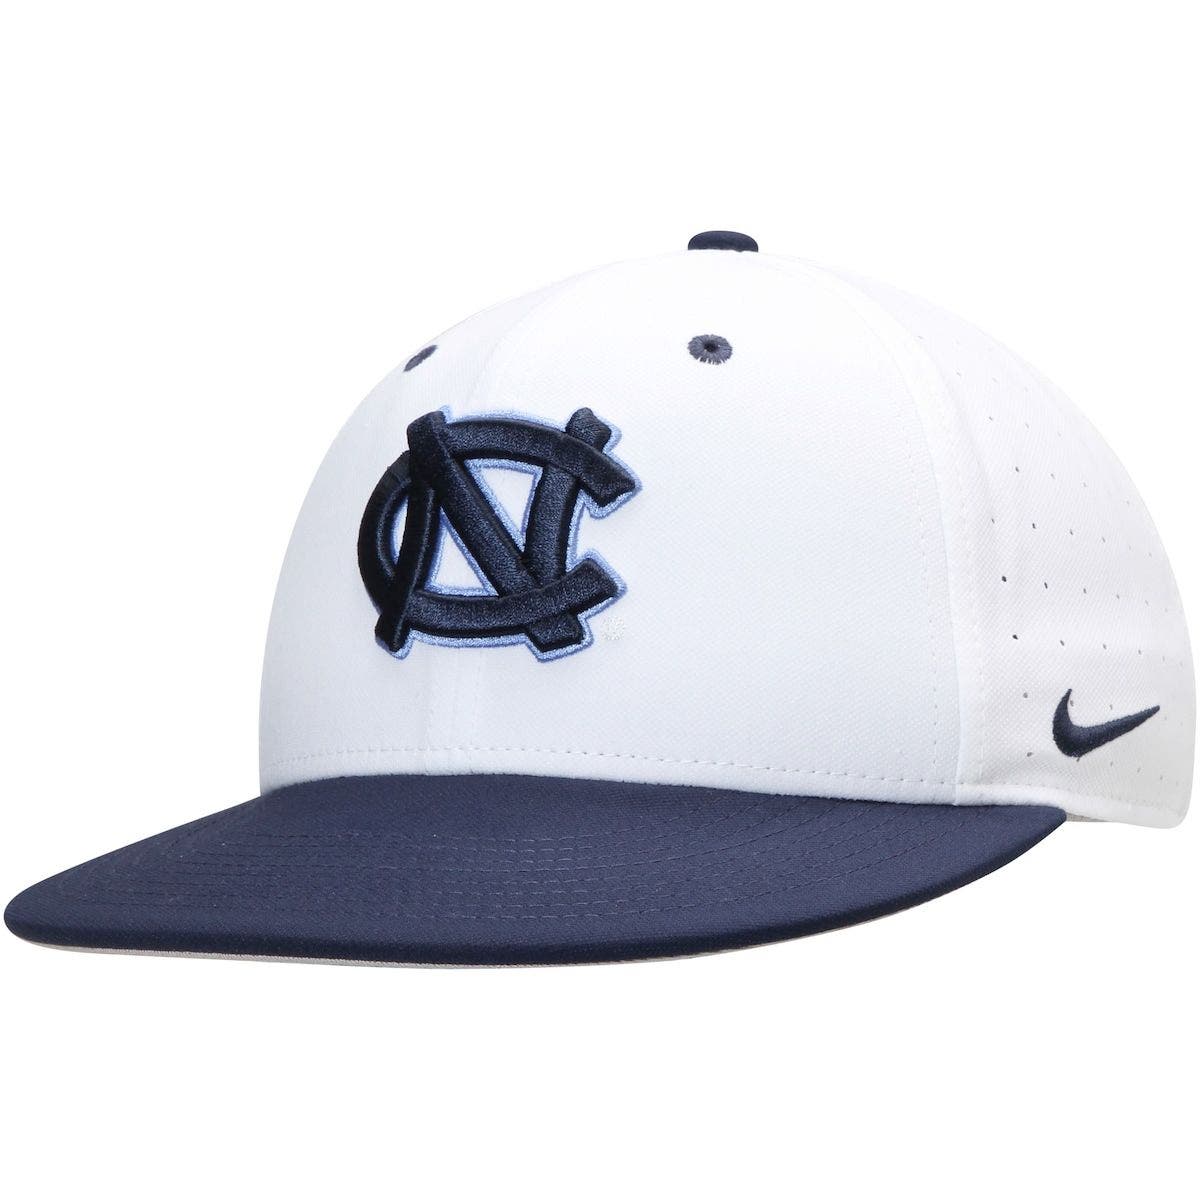 Nike College Aerobill Featherlight (unc) Adjustable Hat (blue